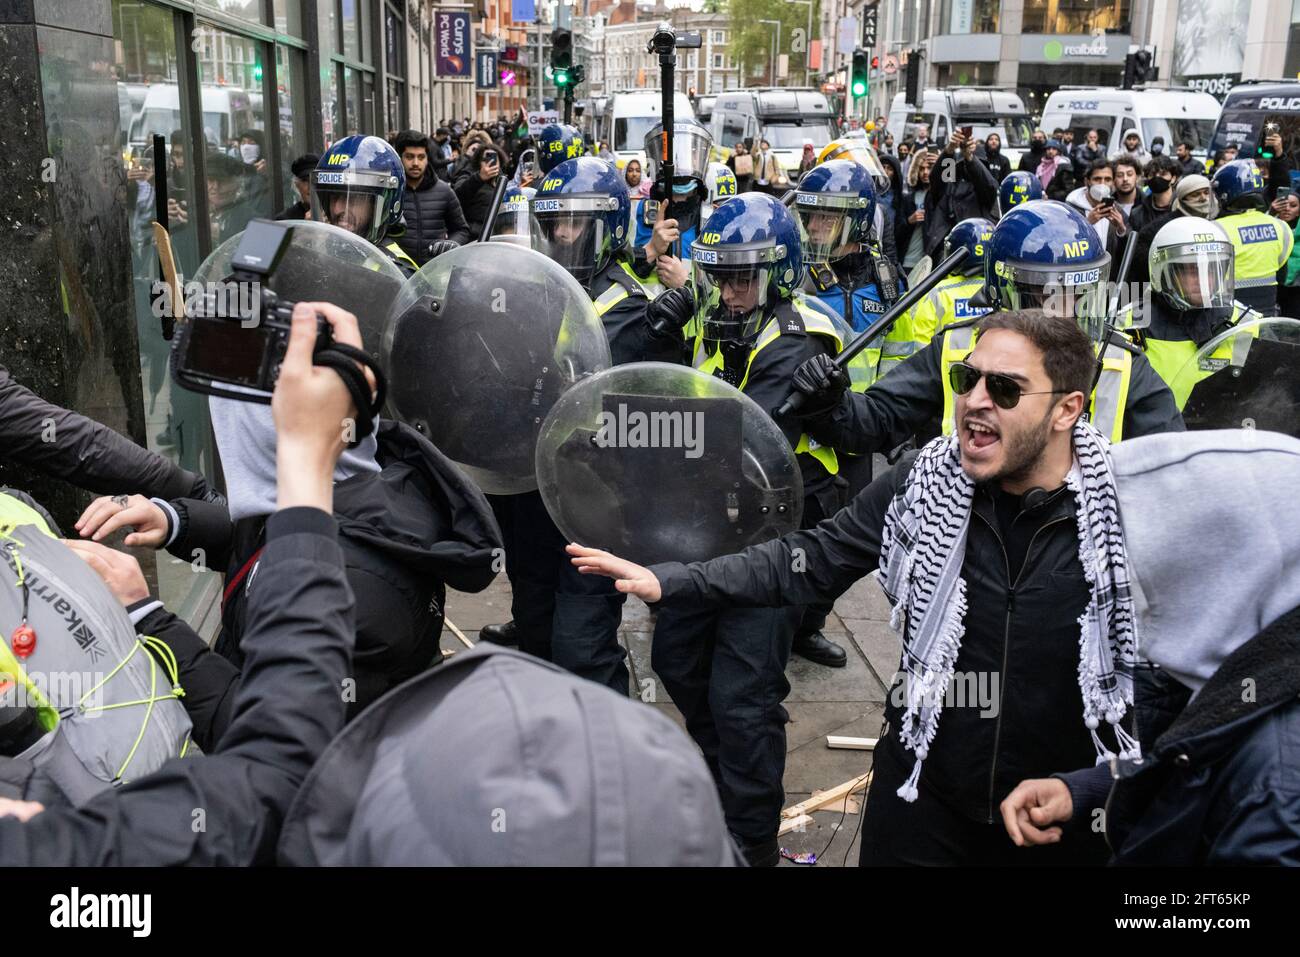 Demonstranten stoßen vor der israelischen Botschaft auf Polizei, Protest gegen das 'Freie Palästina', London, 15. Mai 2021 Stockfoto